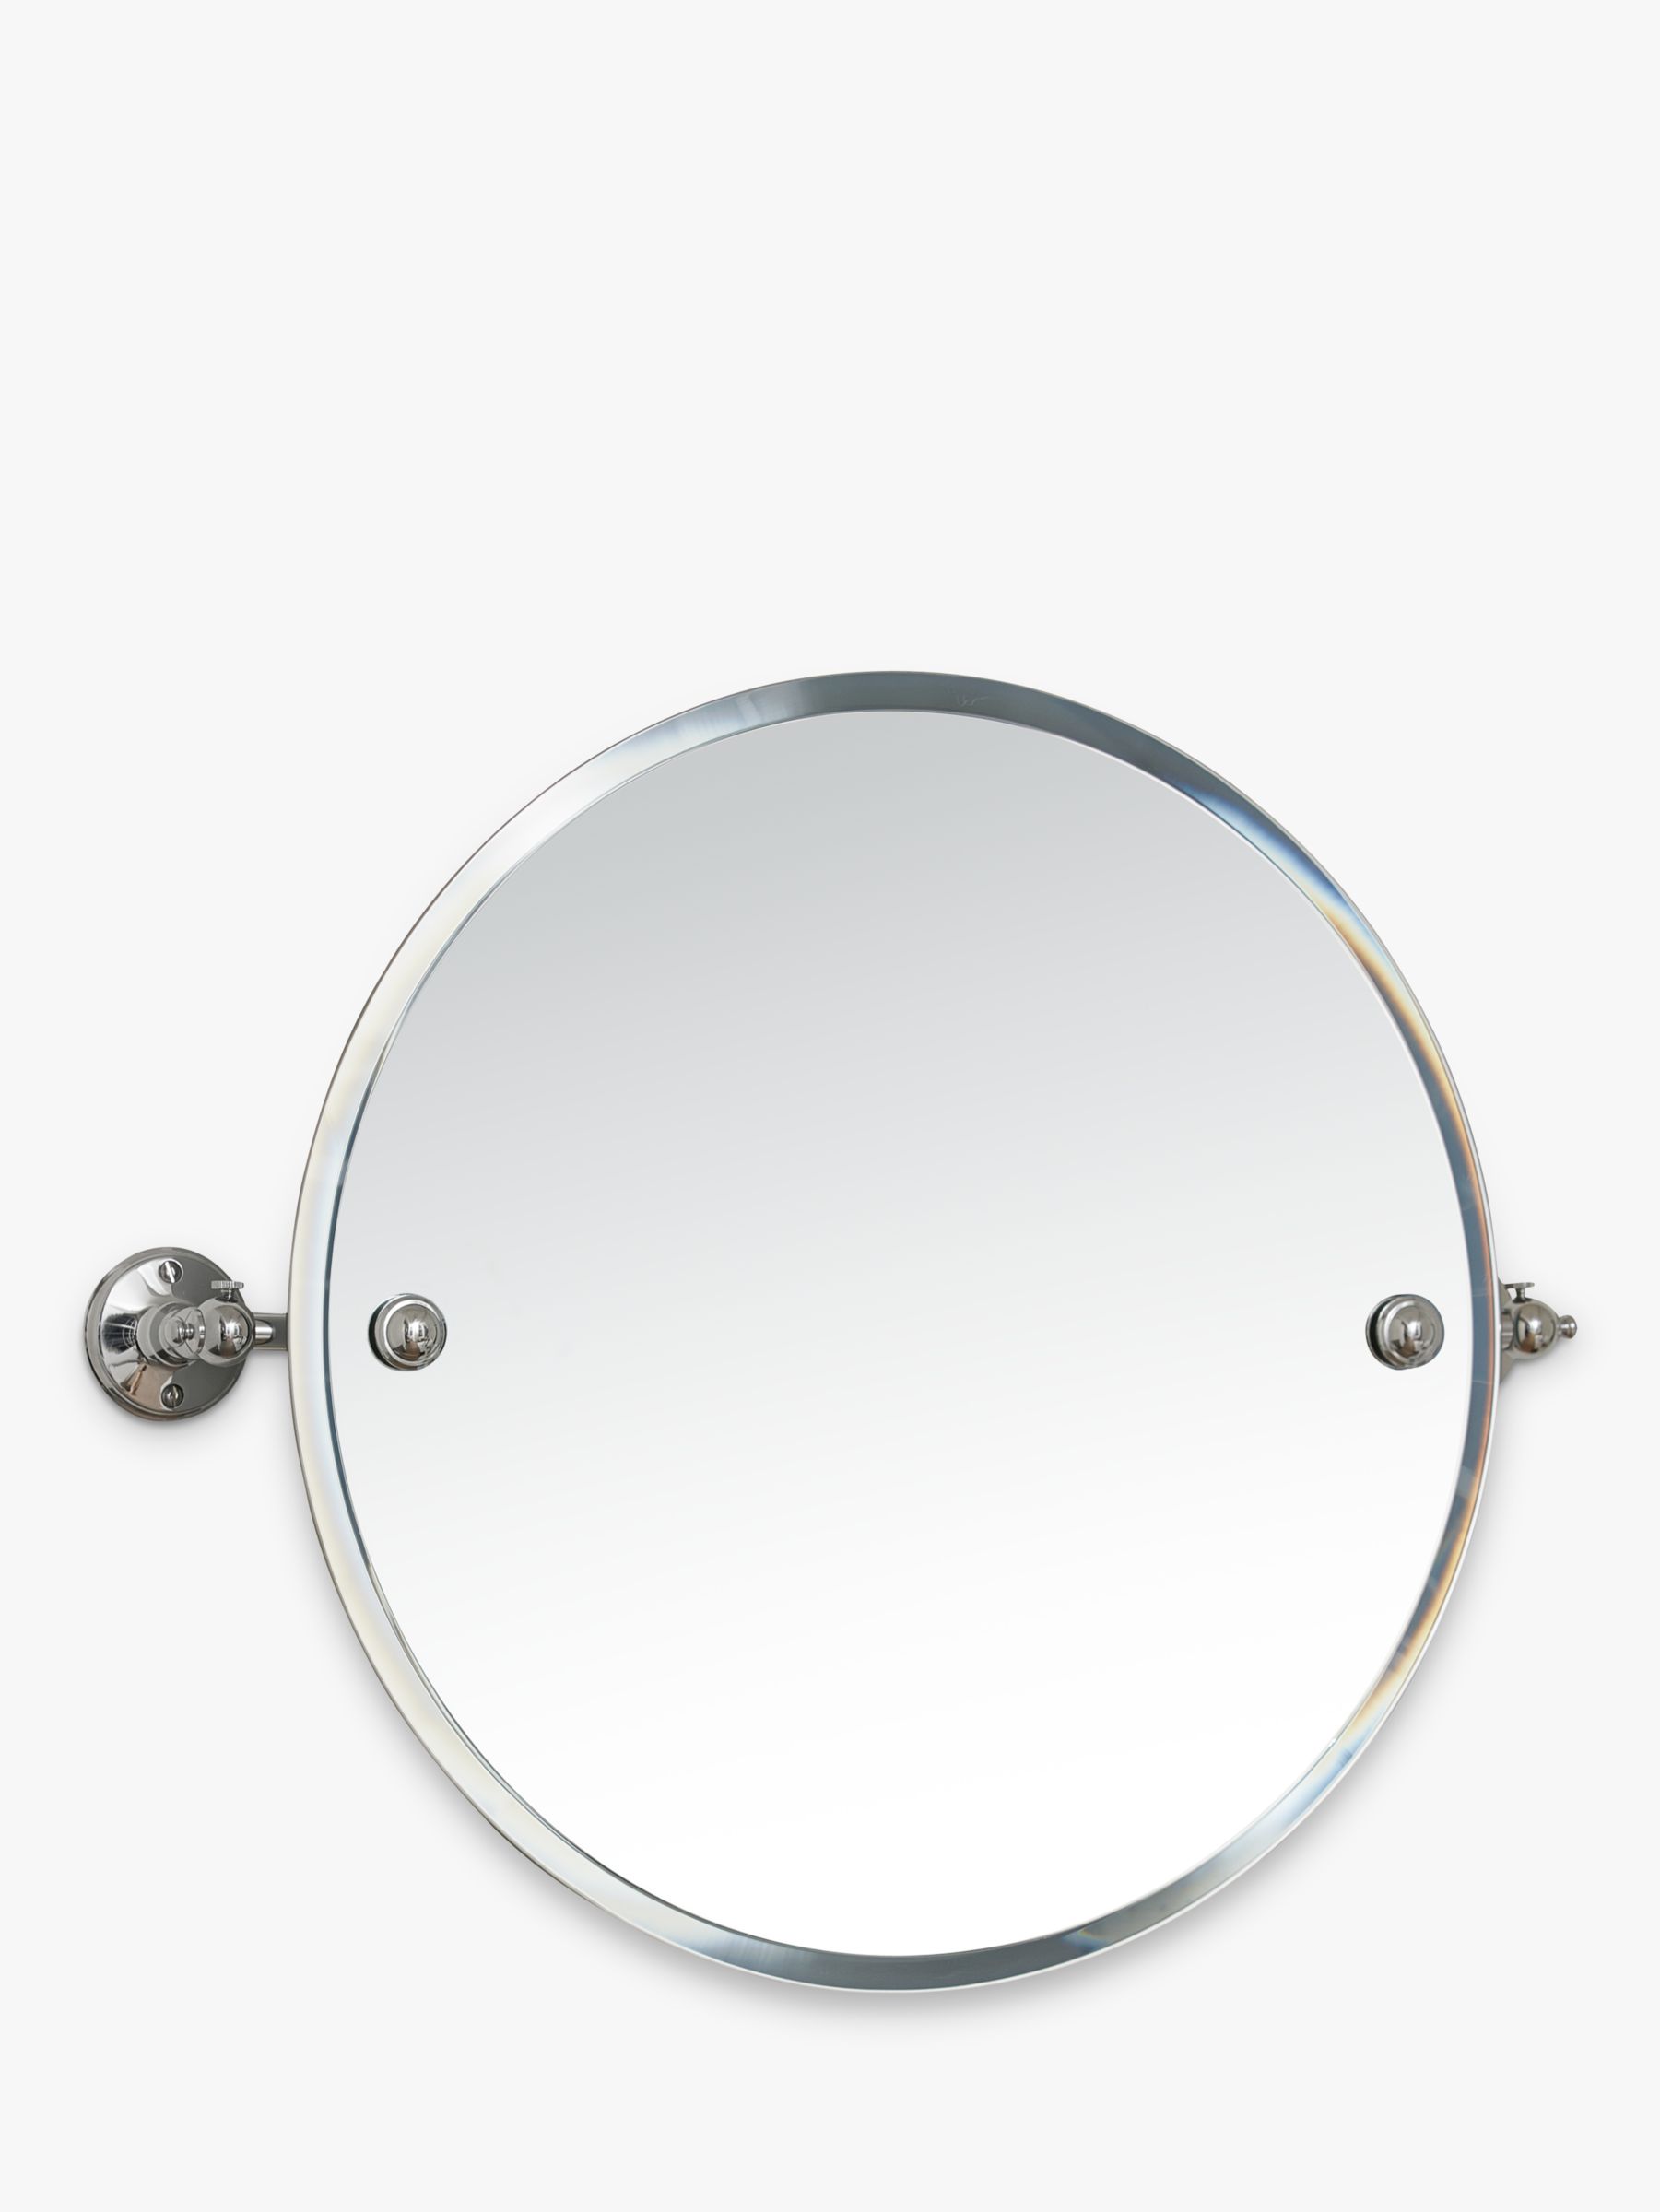 Miller Stockholm Tilting Bathroom Mirror, Large Round Tilting Bathroom Mirror